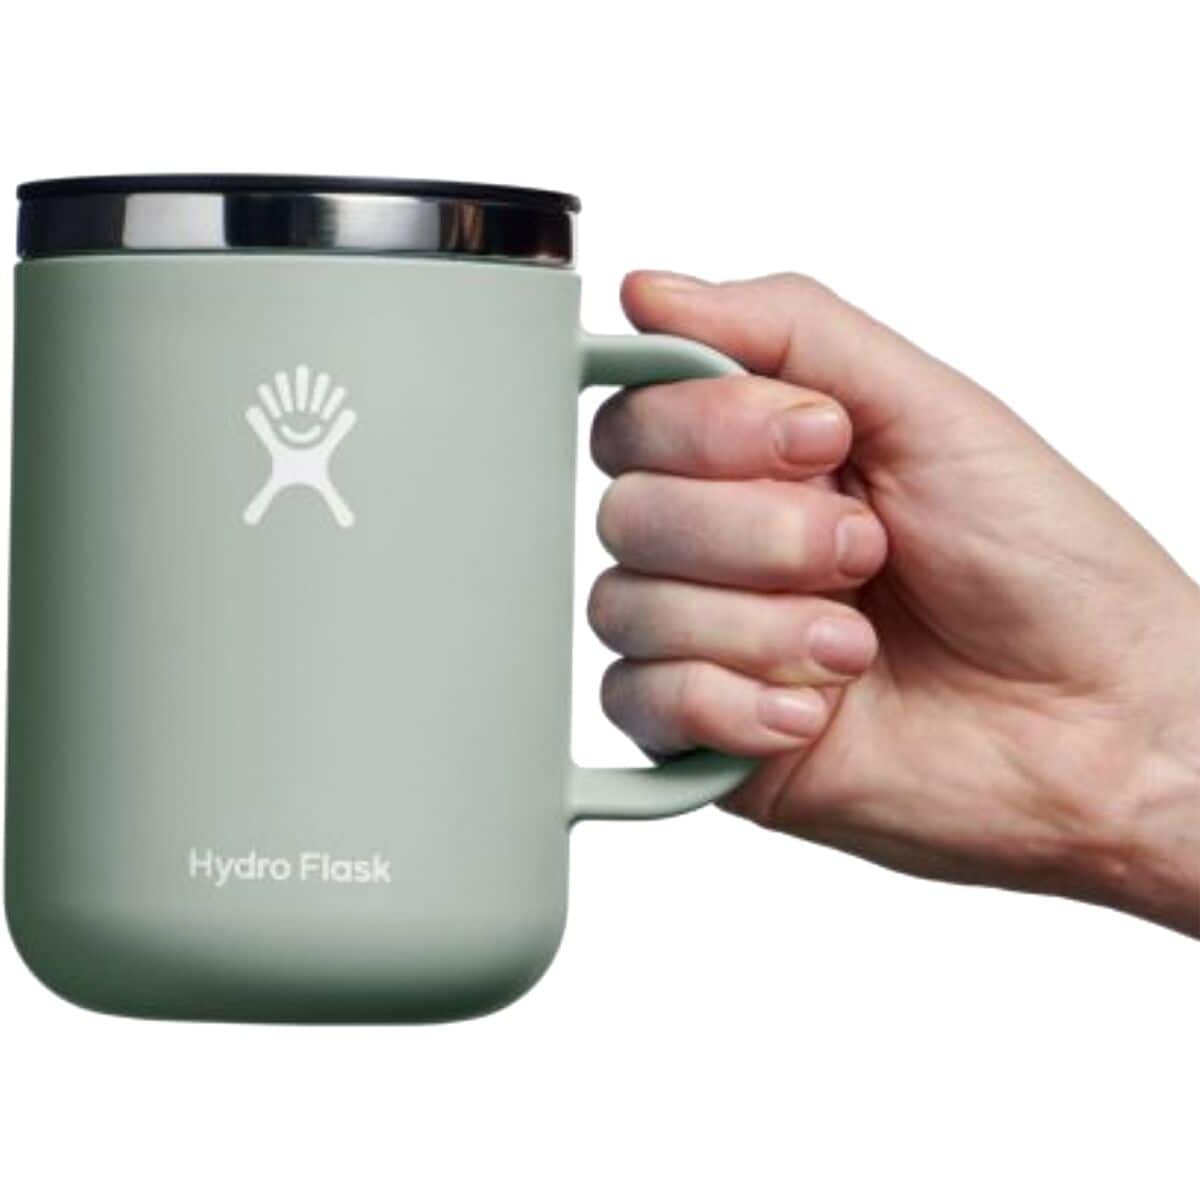 Hydro Flask 24oz Coffee Mug – The Backpacker